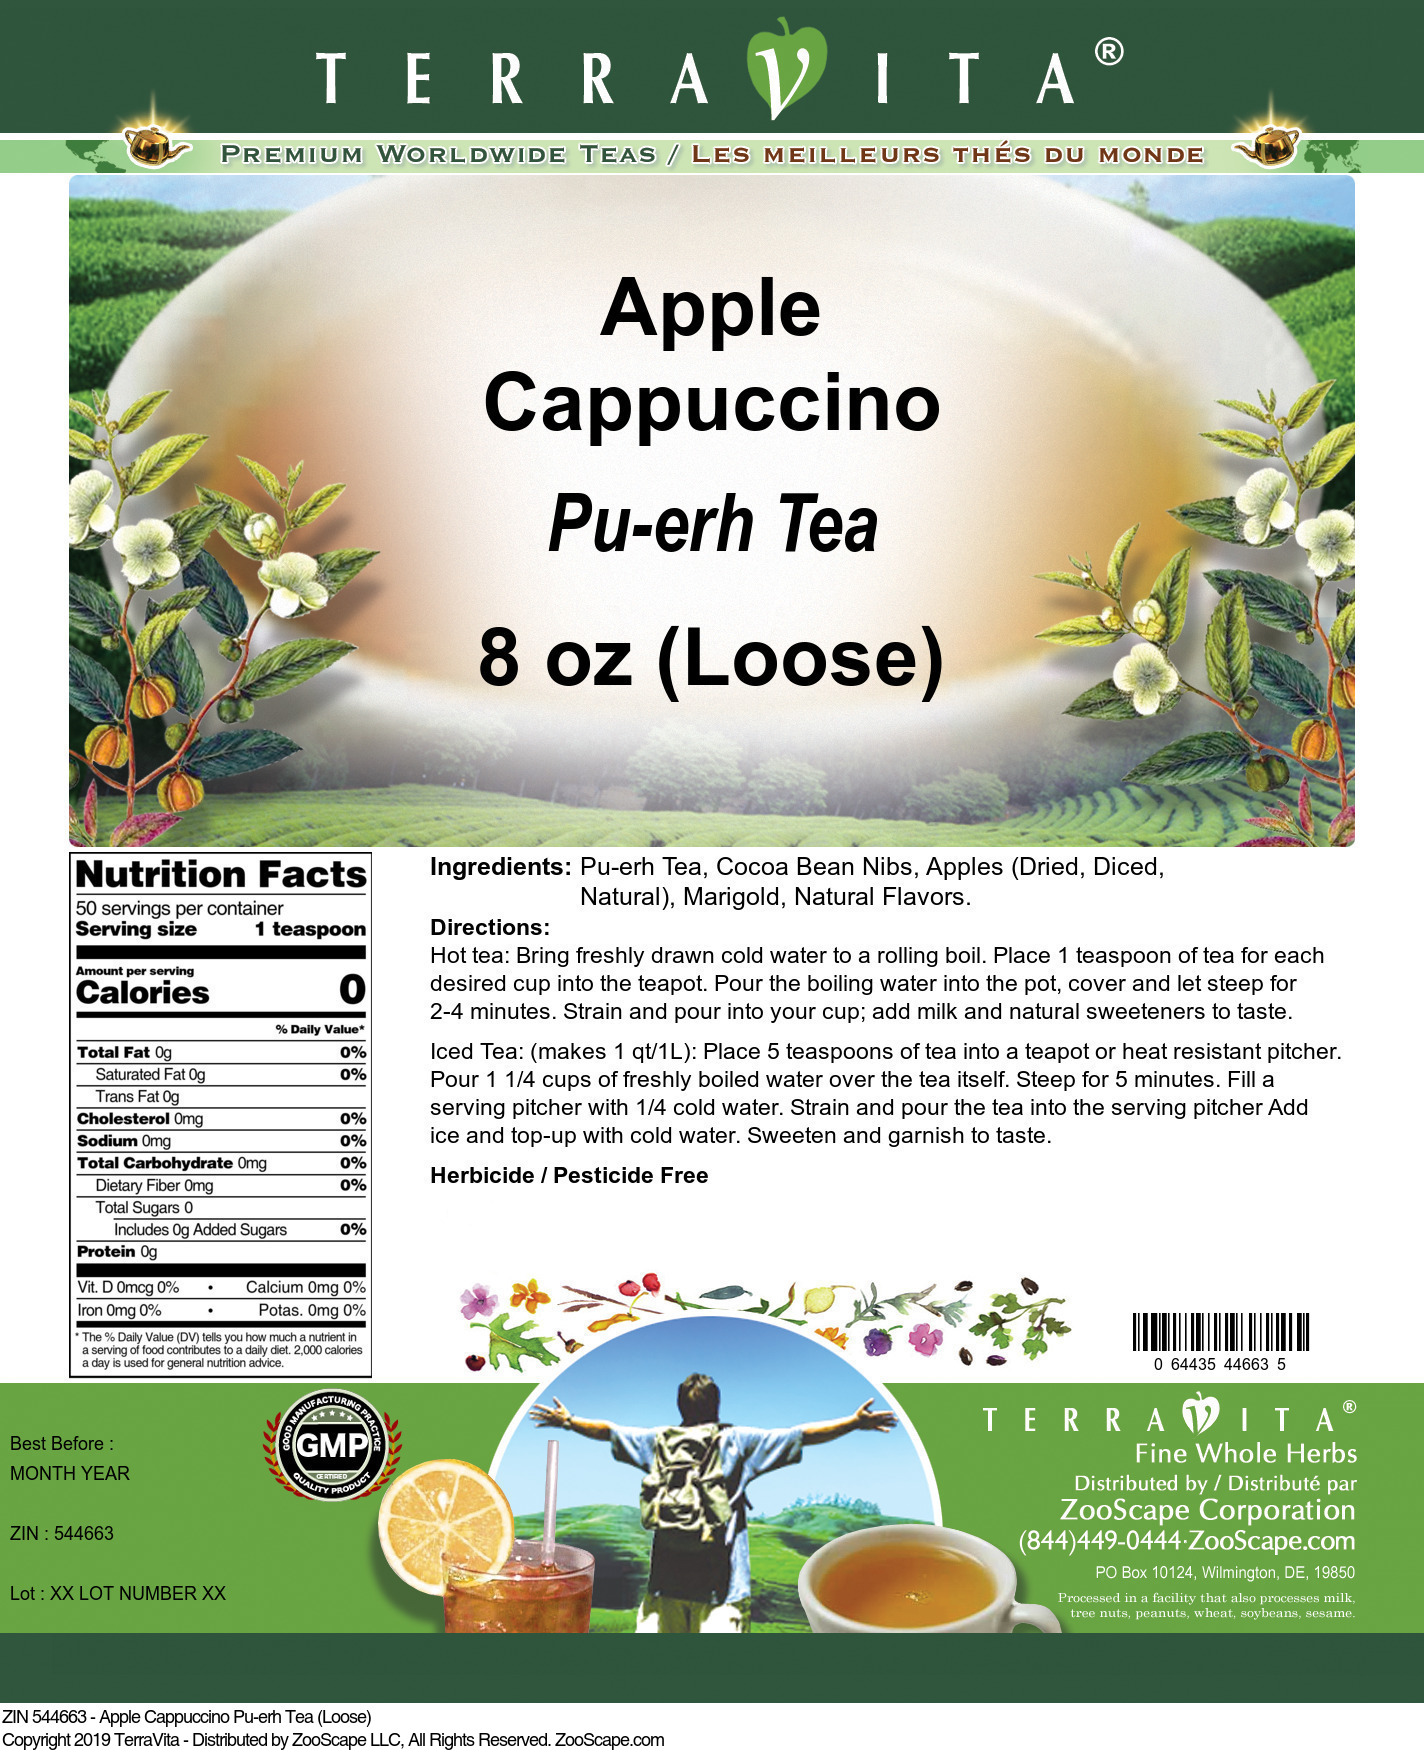 Apple Cappuccino Pu-erh Tea (Loose) - Label